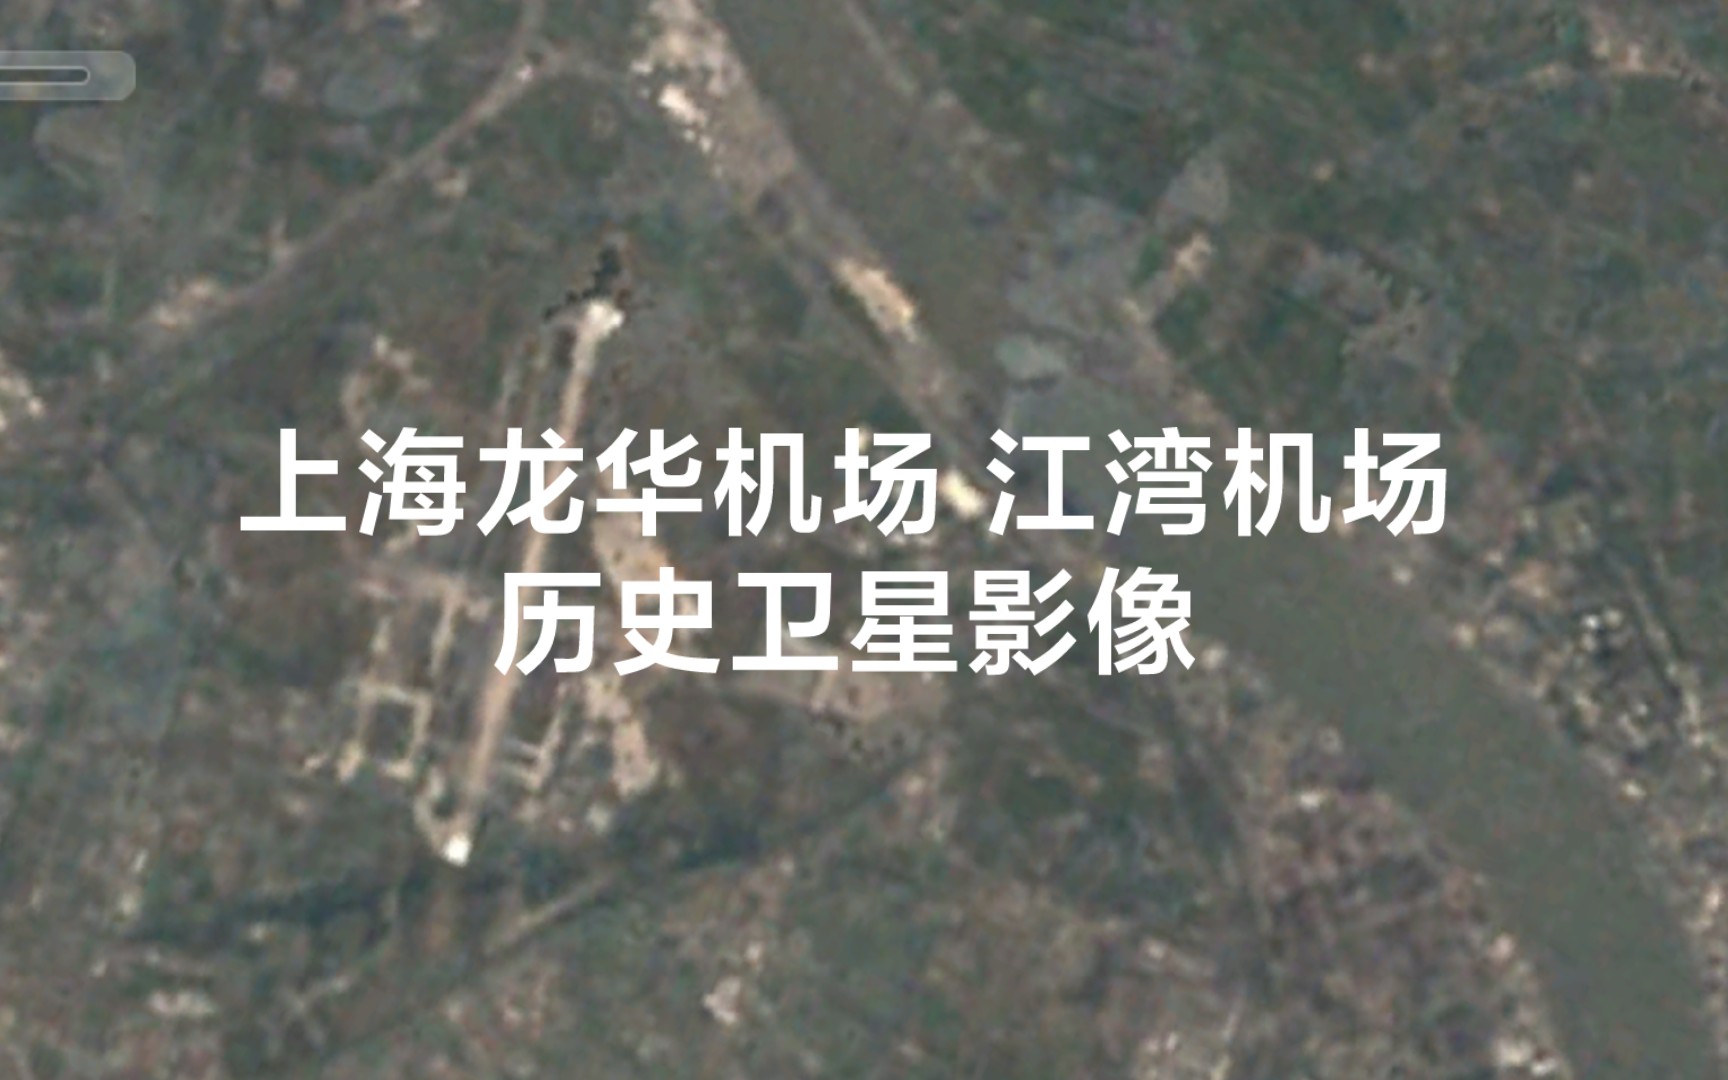 上海龙华机场和江湾机场历史卫星影像